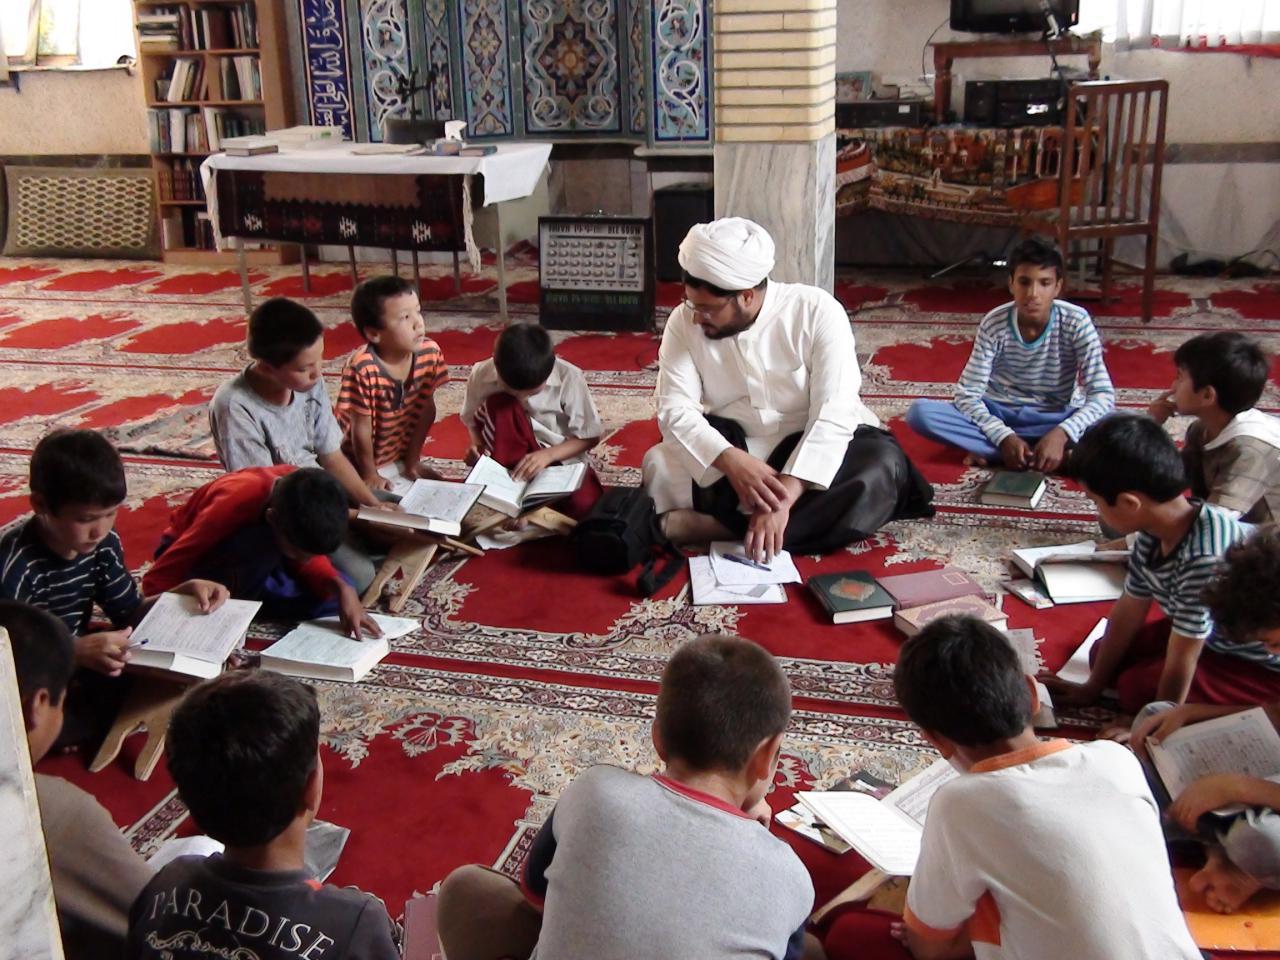 یکی از کارهای مخصوص نوجوانان حضور در مساجد و آشنایی با بقیه هم سالان است